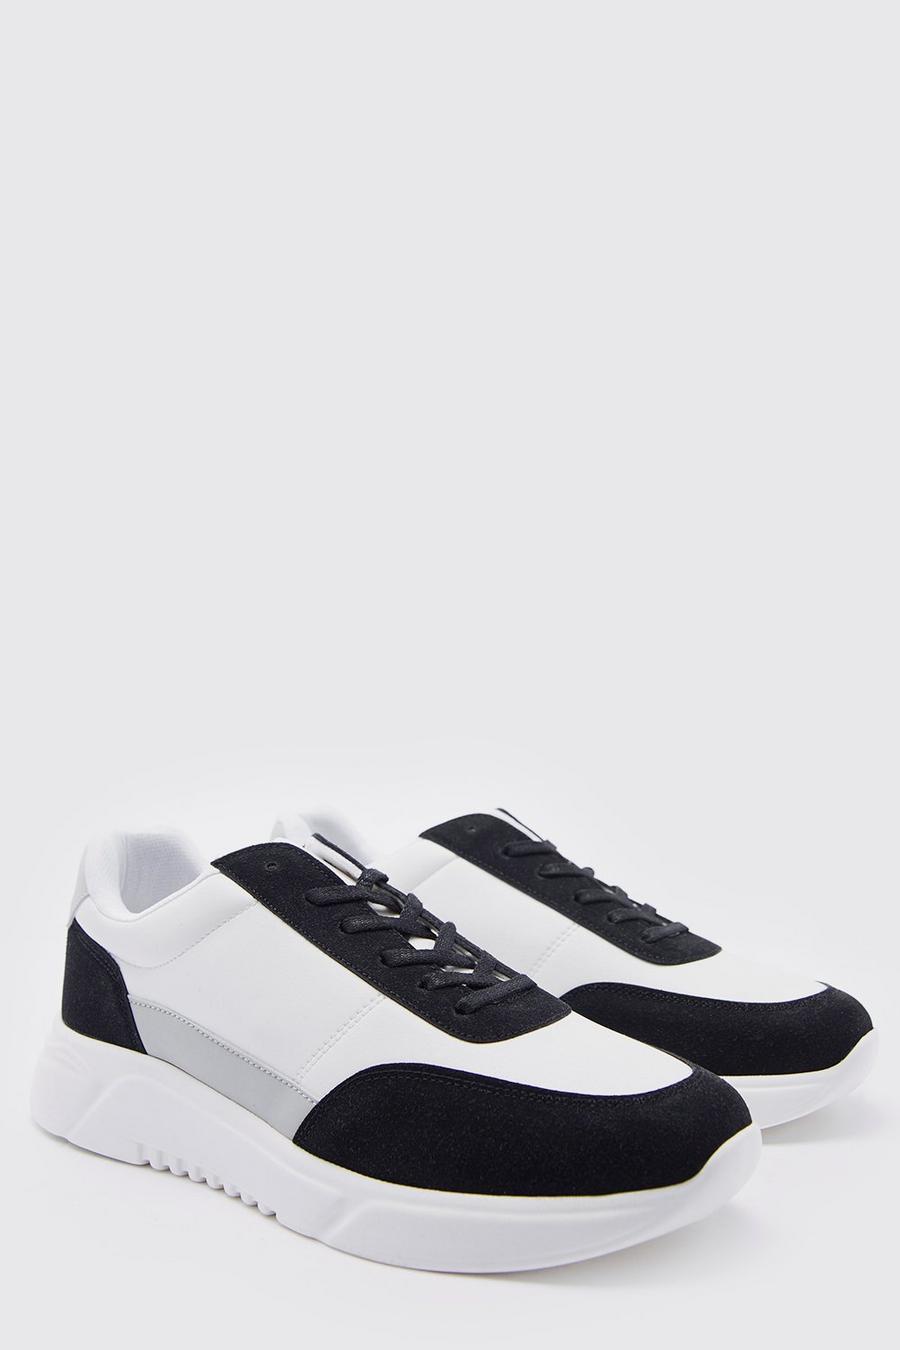 Zapatillas deportivas con panel de cuero sintético, Black negro